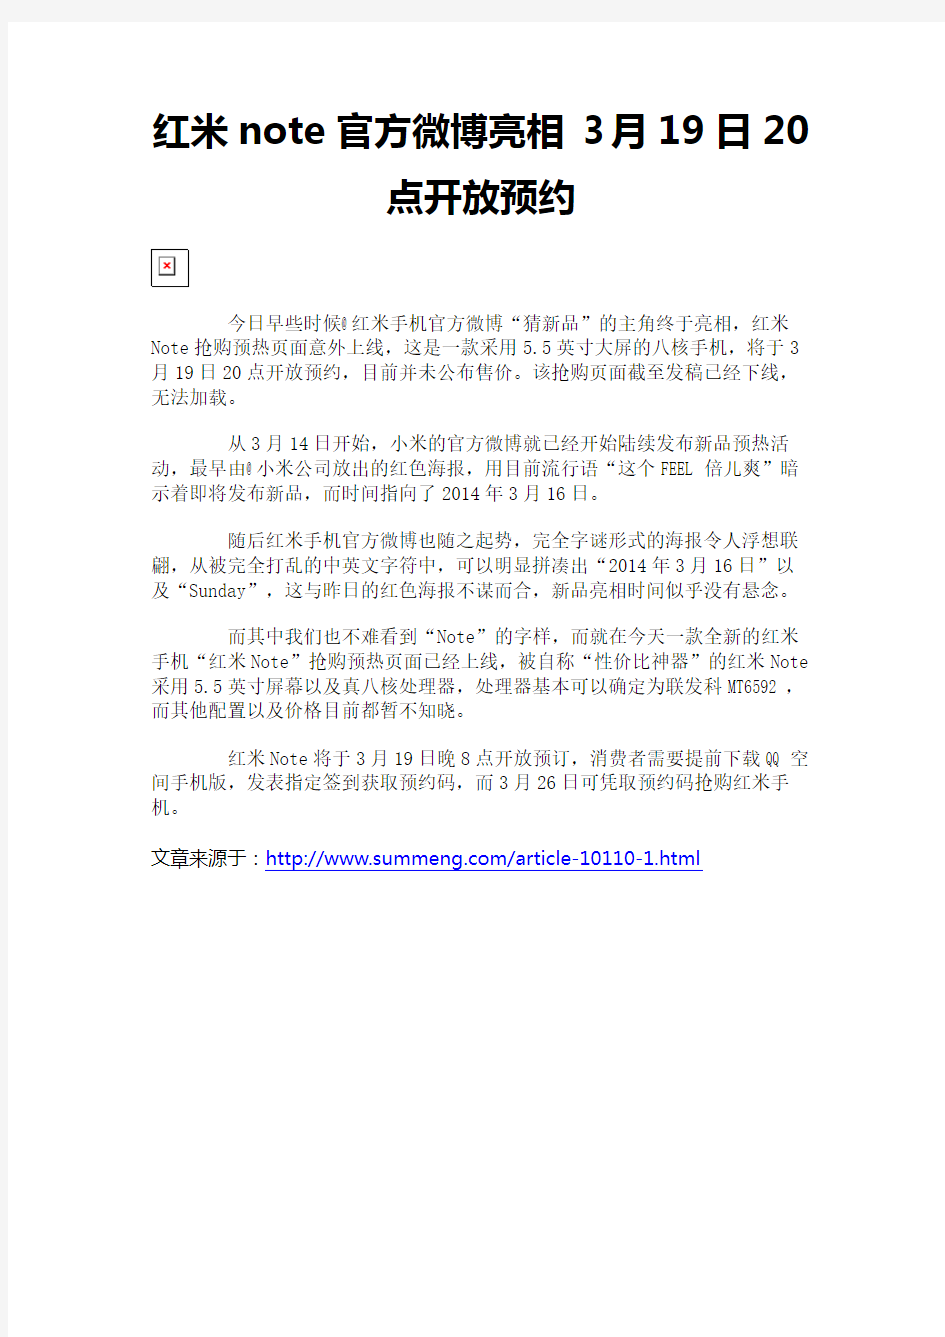 红米note官方微博亮相 3月19日20点开放预约